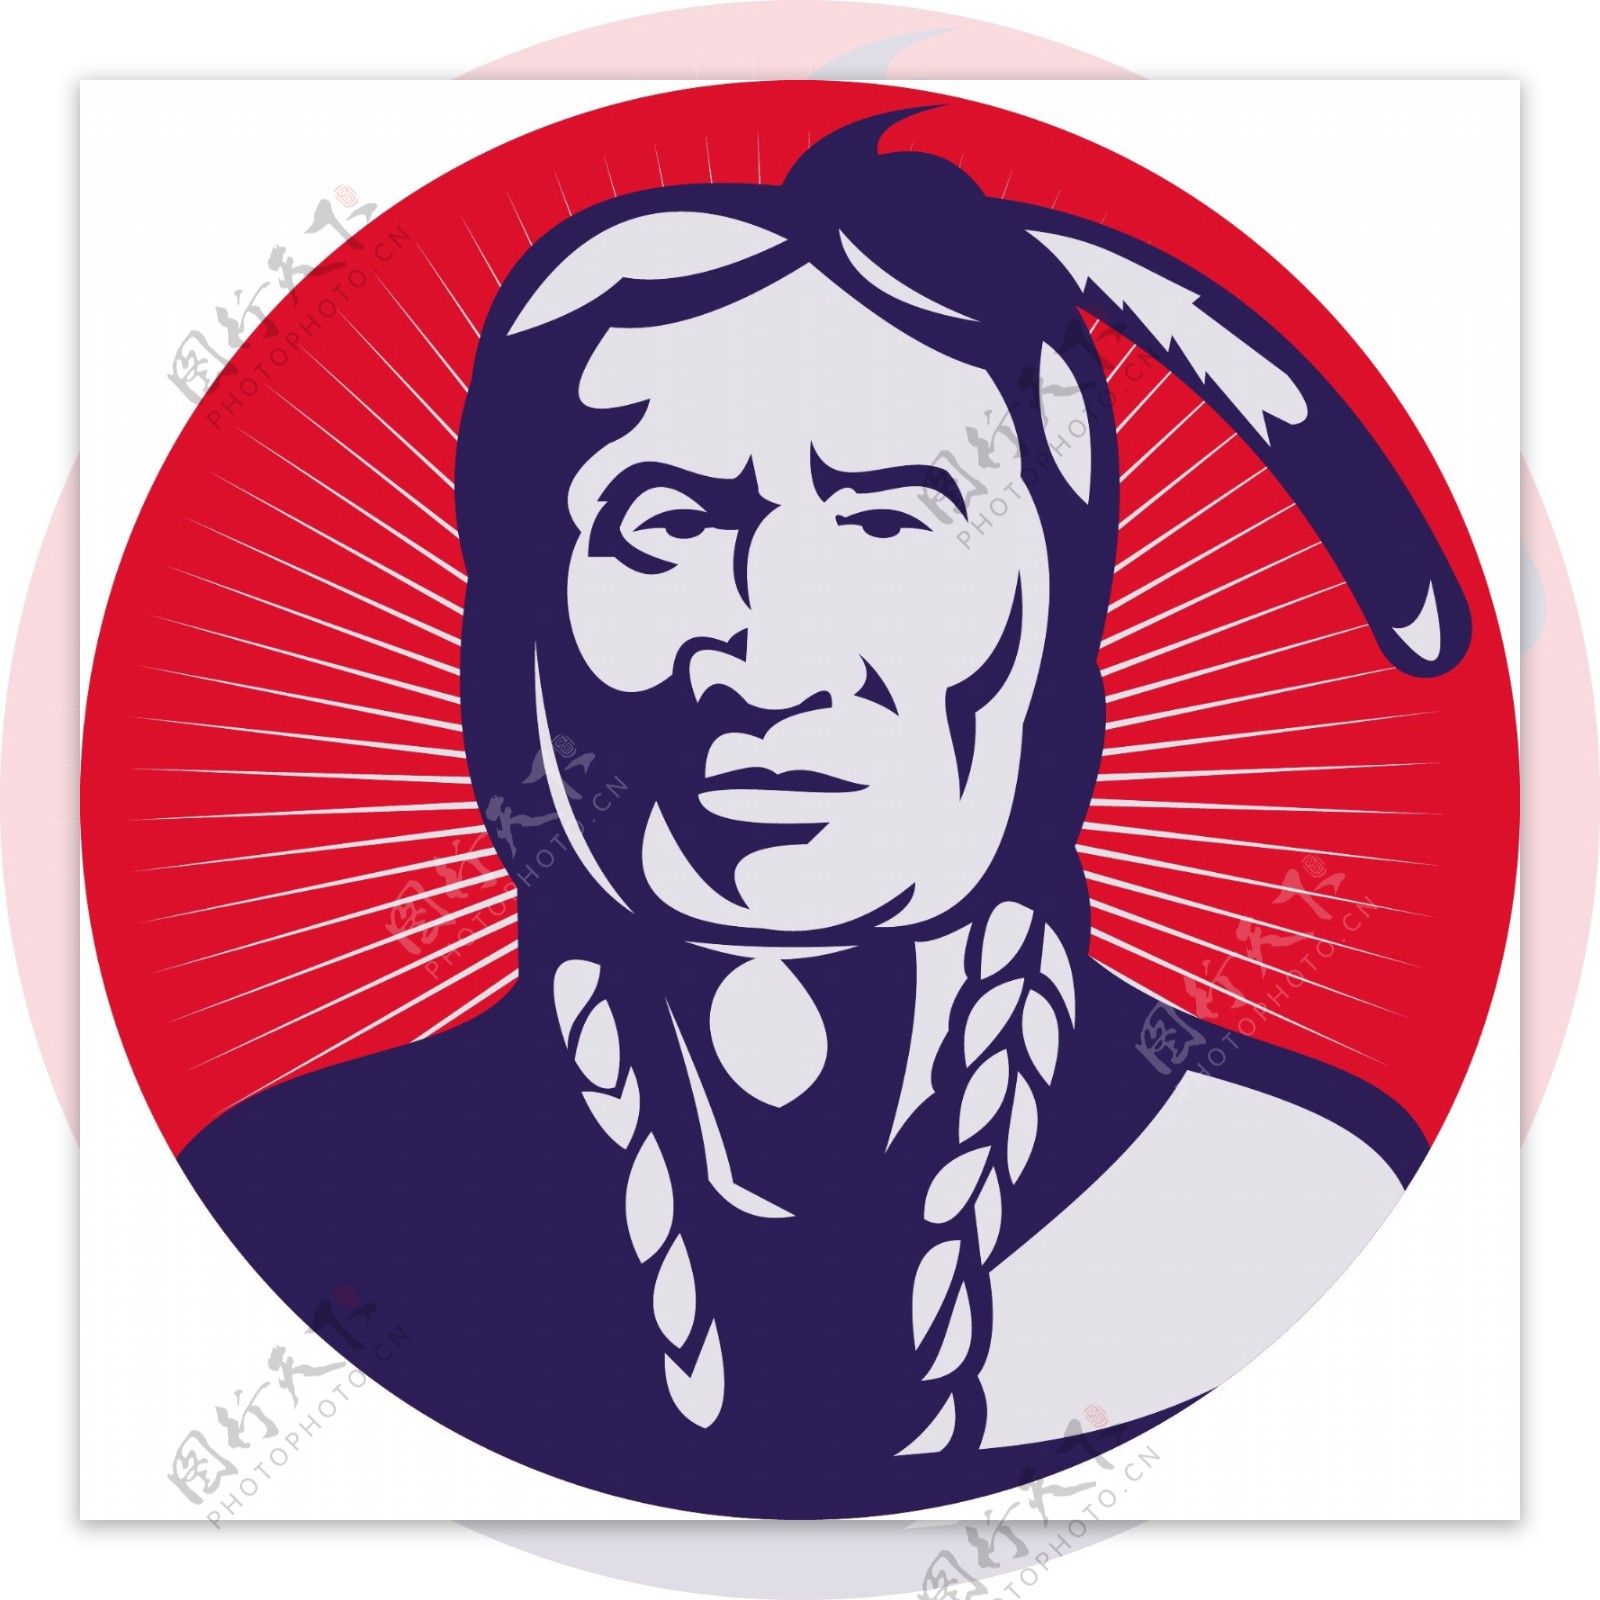 美洲土著印第安酋长面对前面